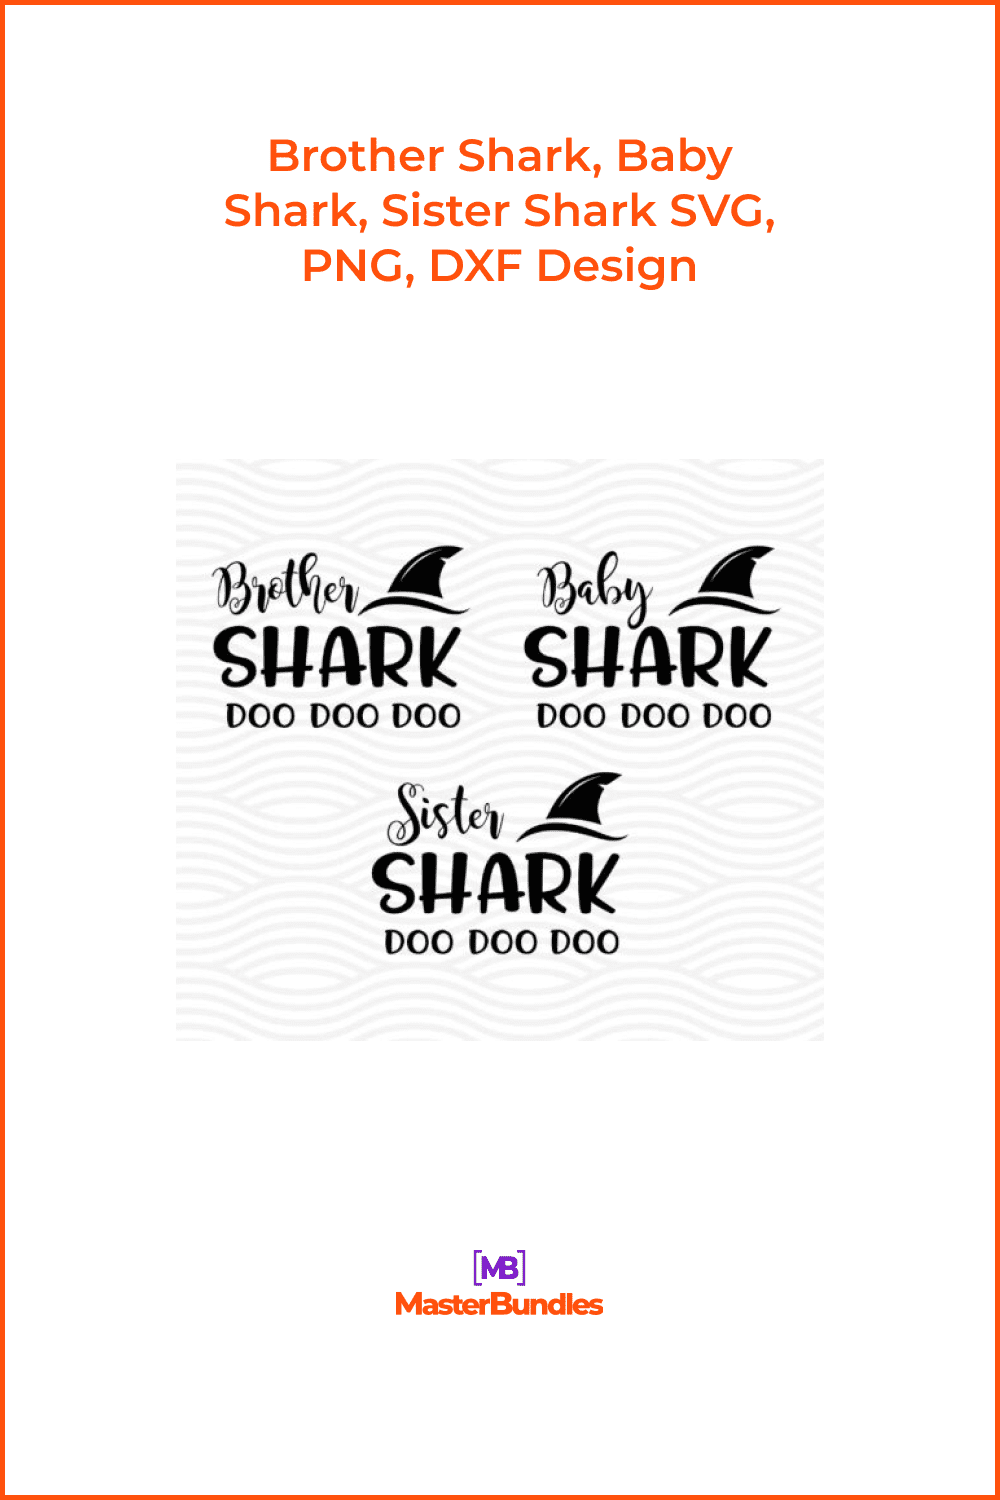 Brother Shark, Baby Shark, Sister Shark SVG, PNG, DXF Design.